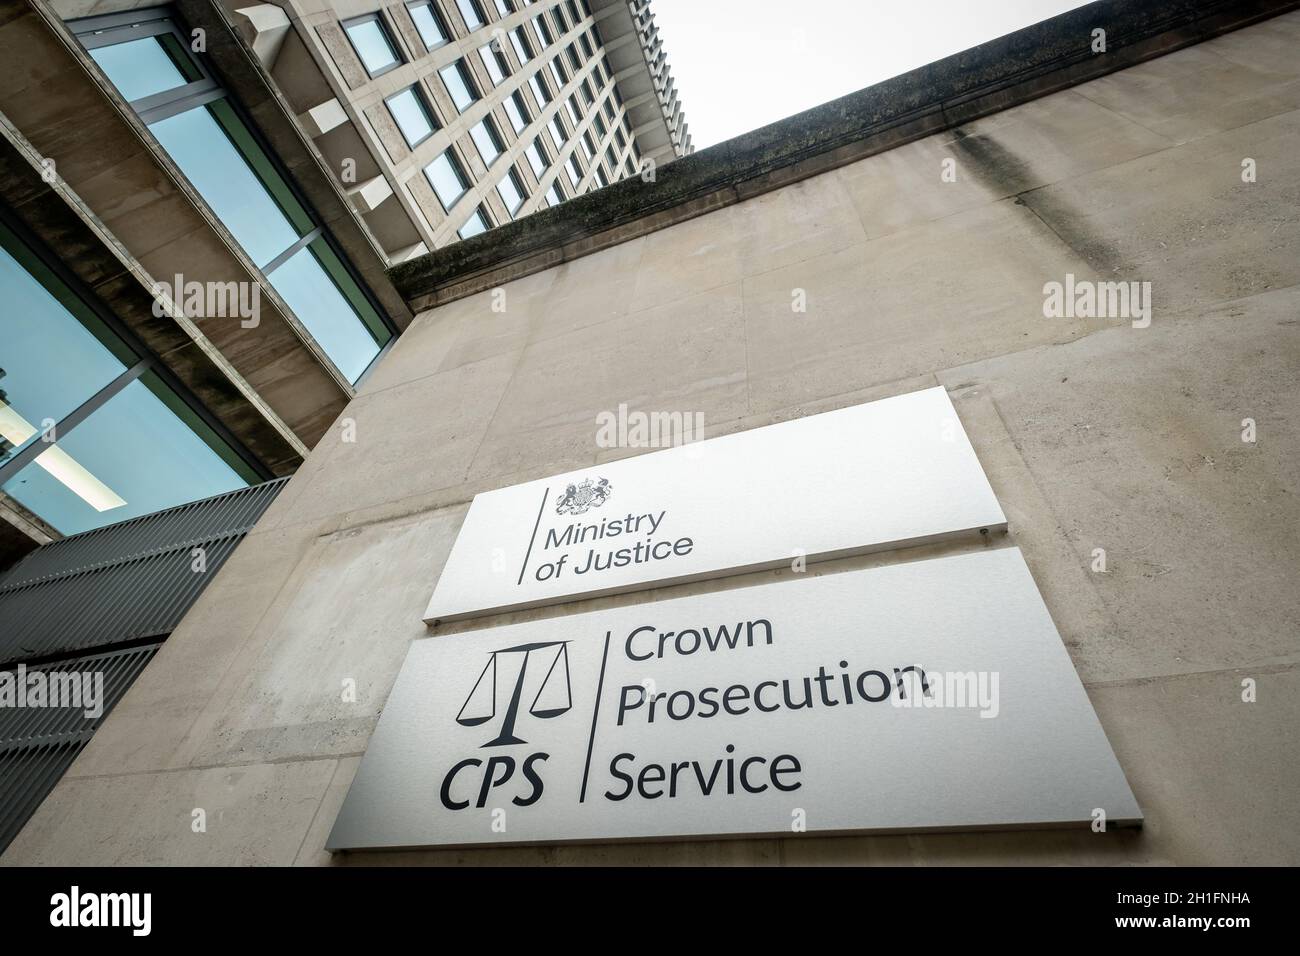 Westminster Londres- Señalización del Ministerio de Justicia y del Servicio de Acusación de la Corona. Edificio gubernamental del Reino Unido Foto de stock